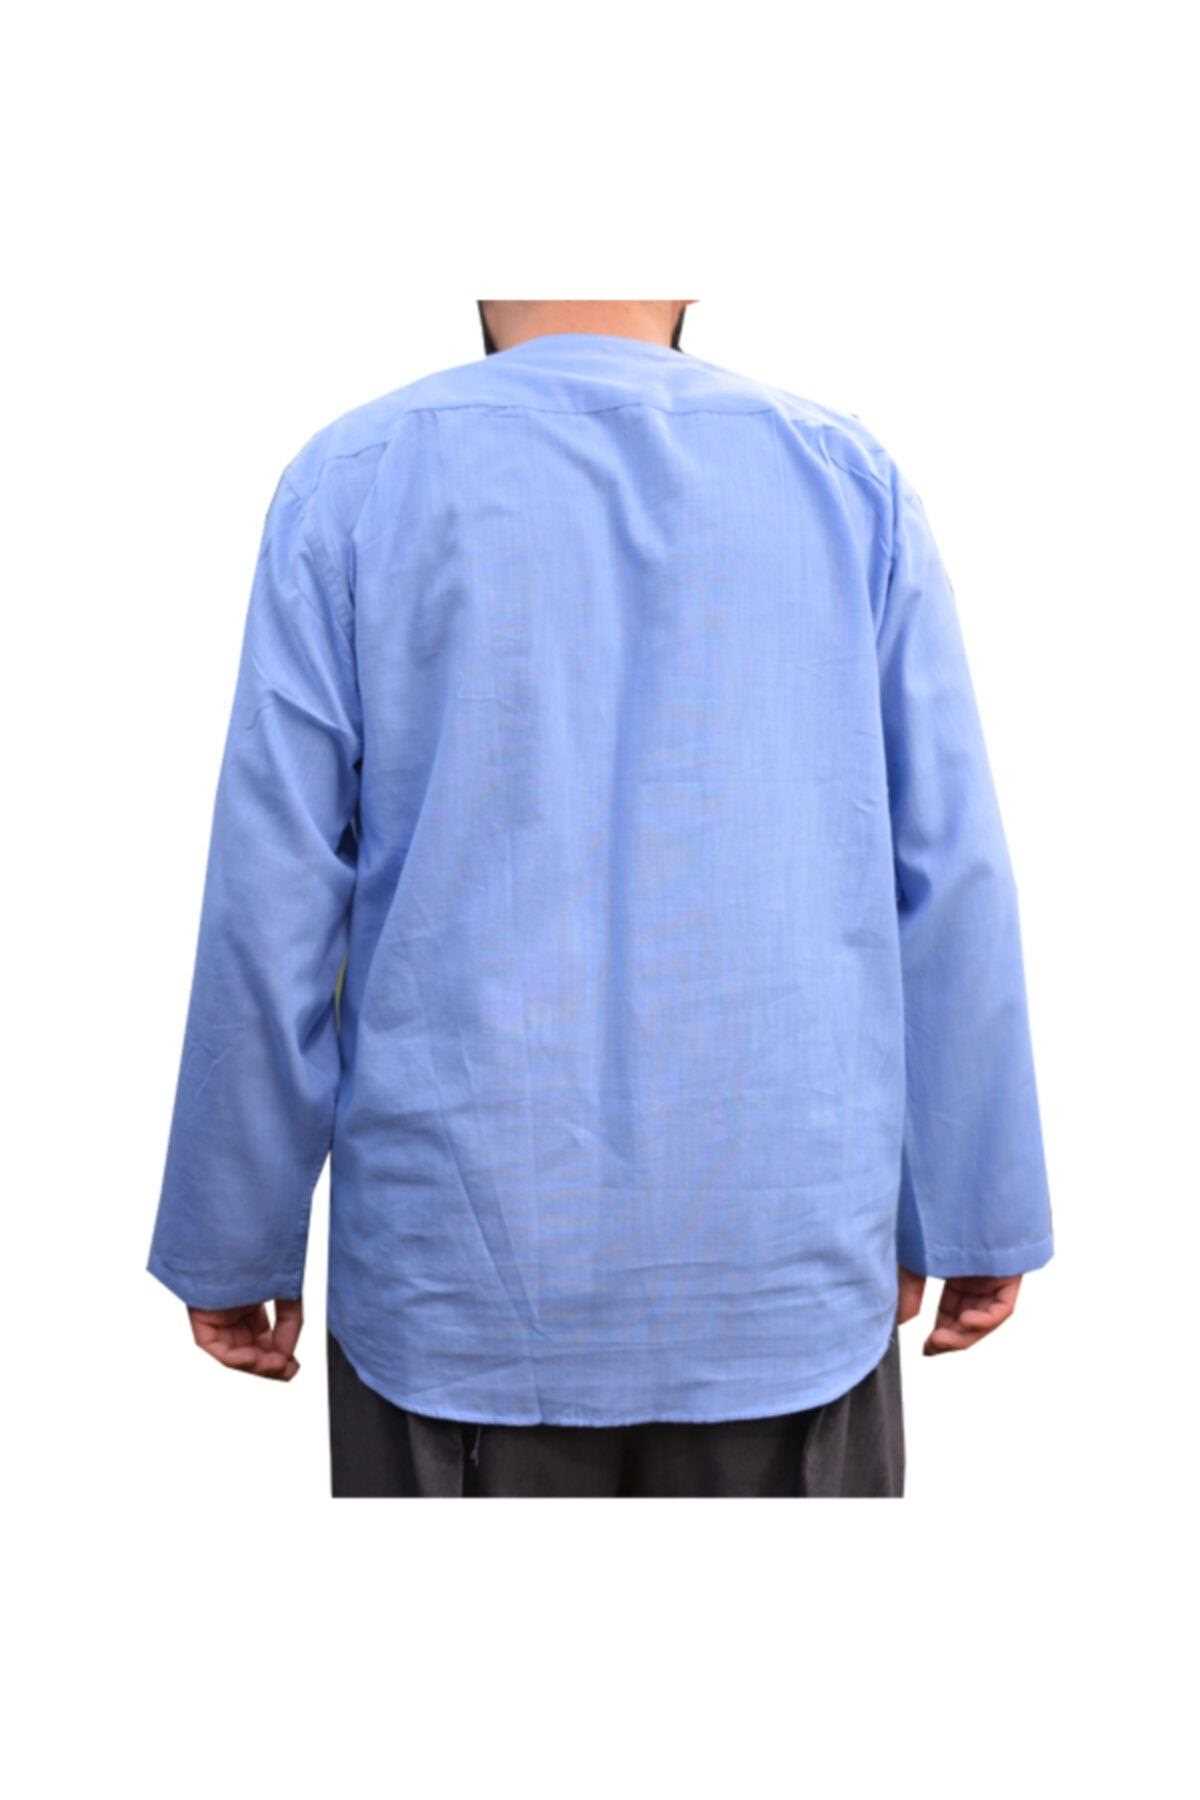 پیراهن مردانه قیمت مناسب برند TerziYusuf رنگ آبی کد ty103630223